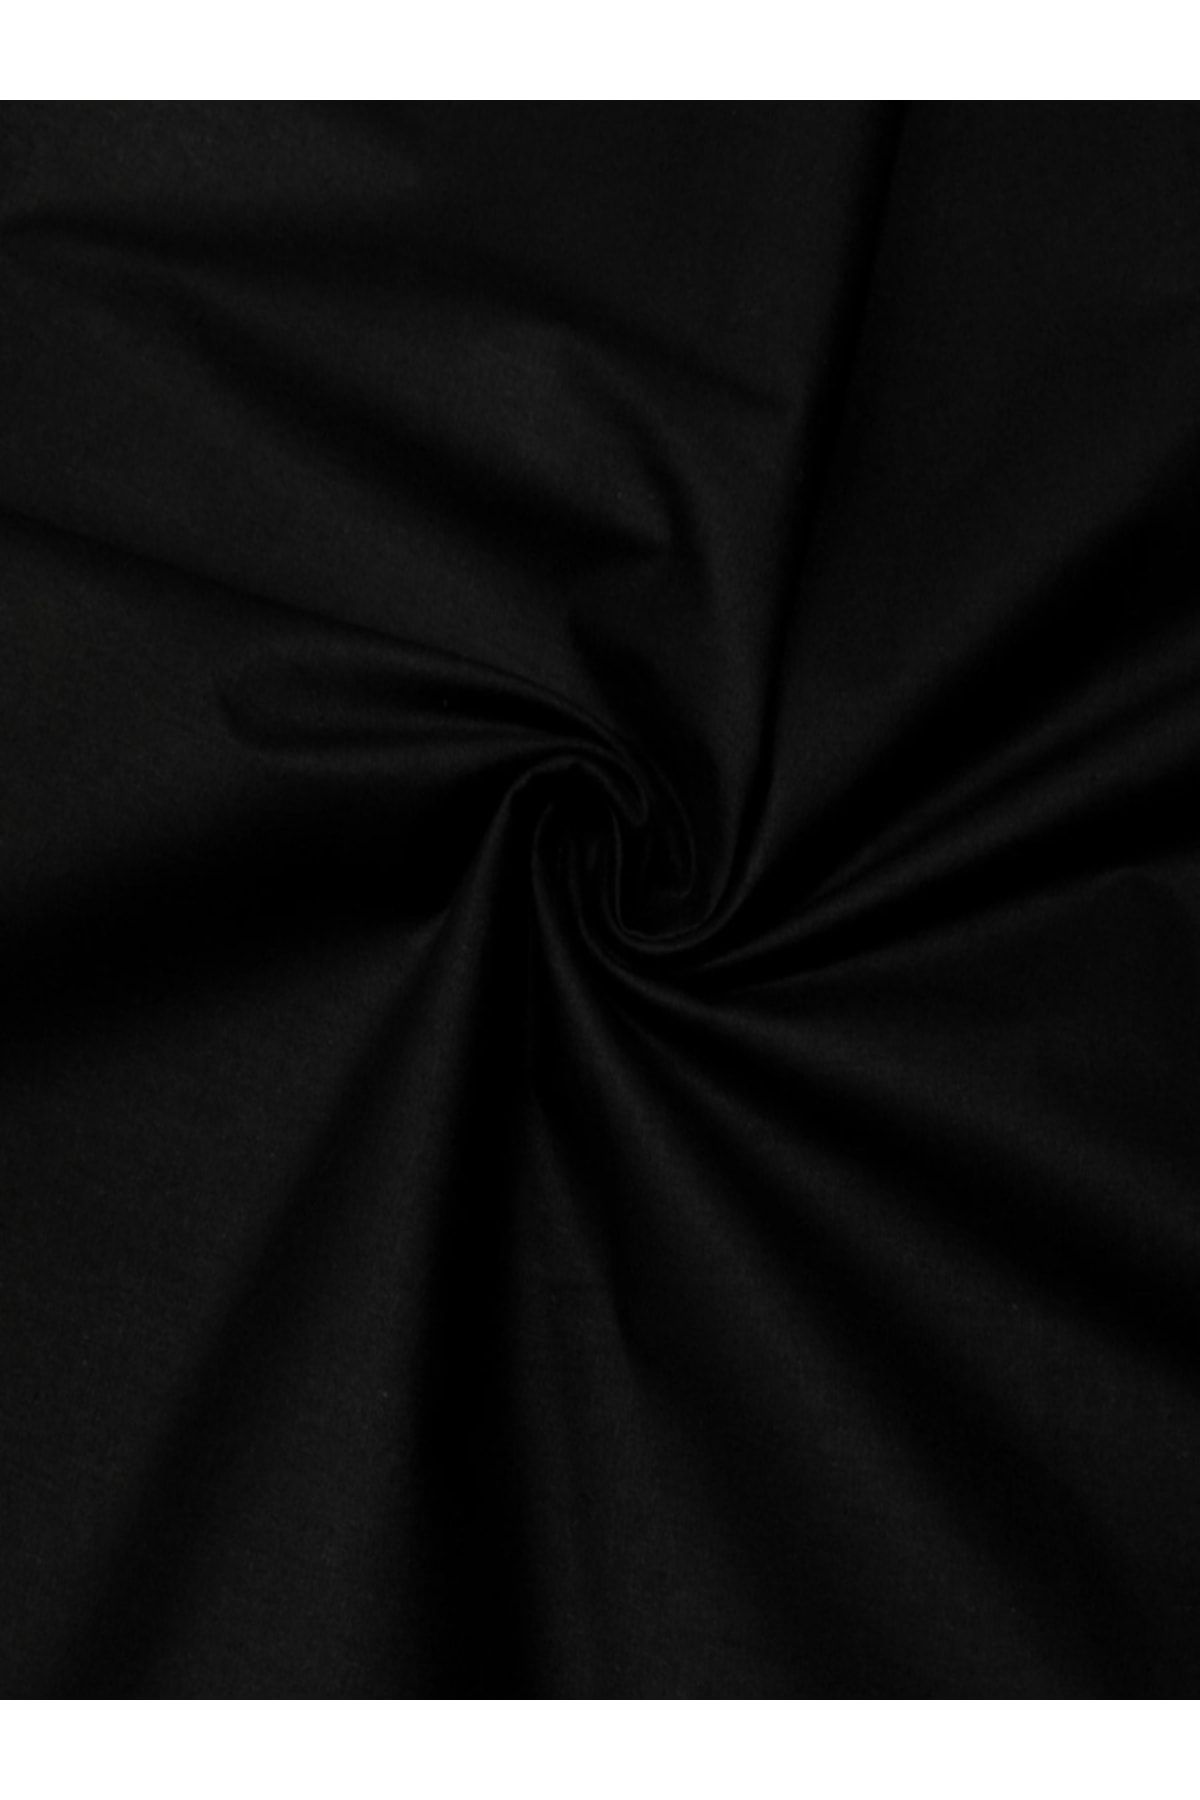 Elbasan Tekstil Amerikan Bezi Siyah Polycotton 240 Cm En